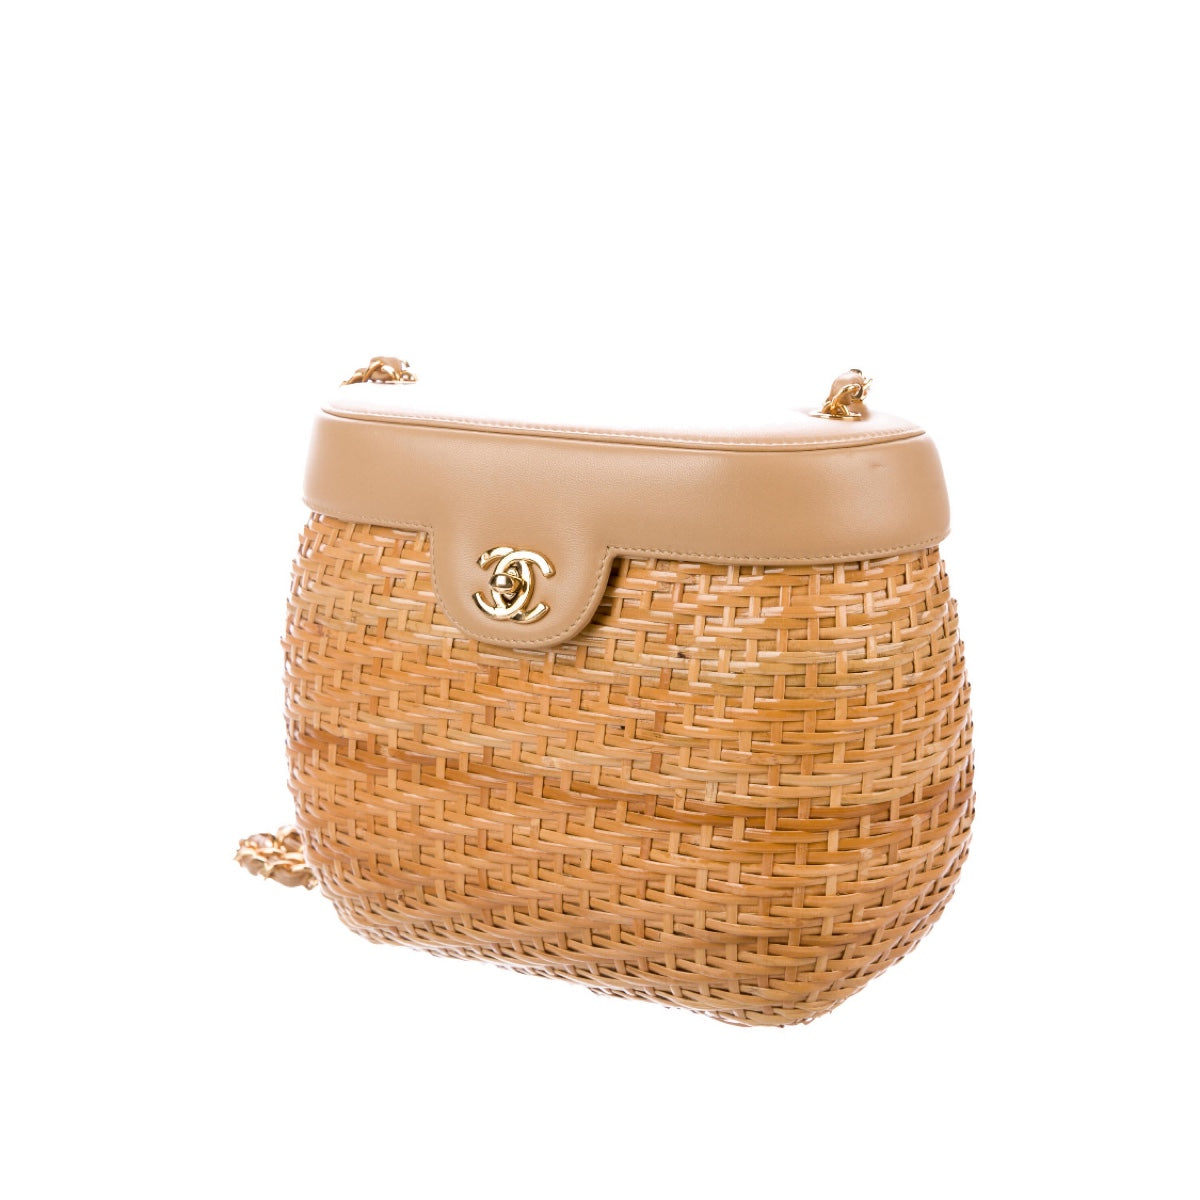 Chanel Wicker Basket Bag - Handbags - CHA31511, The RealReal